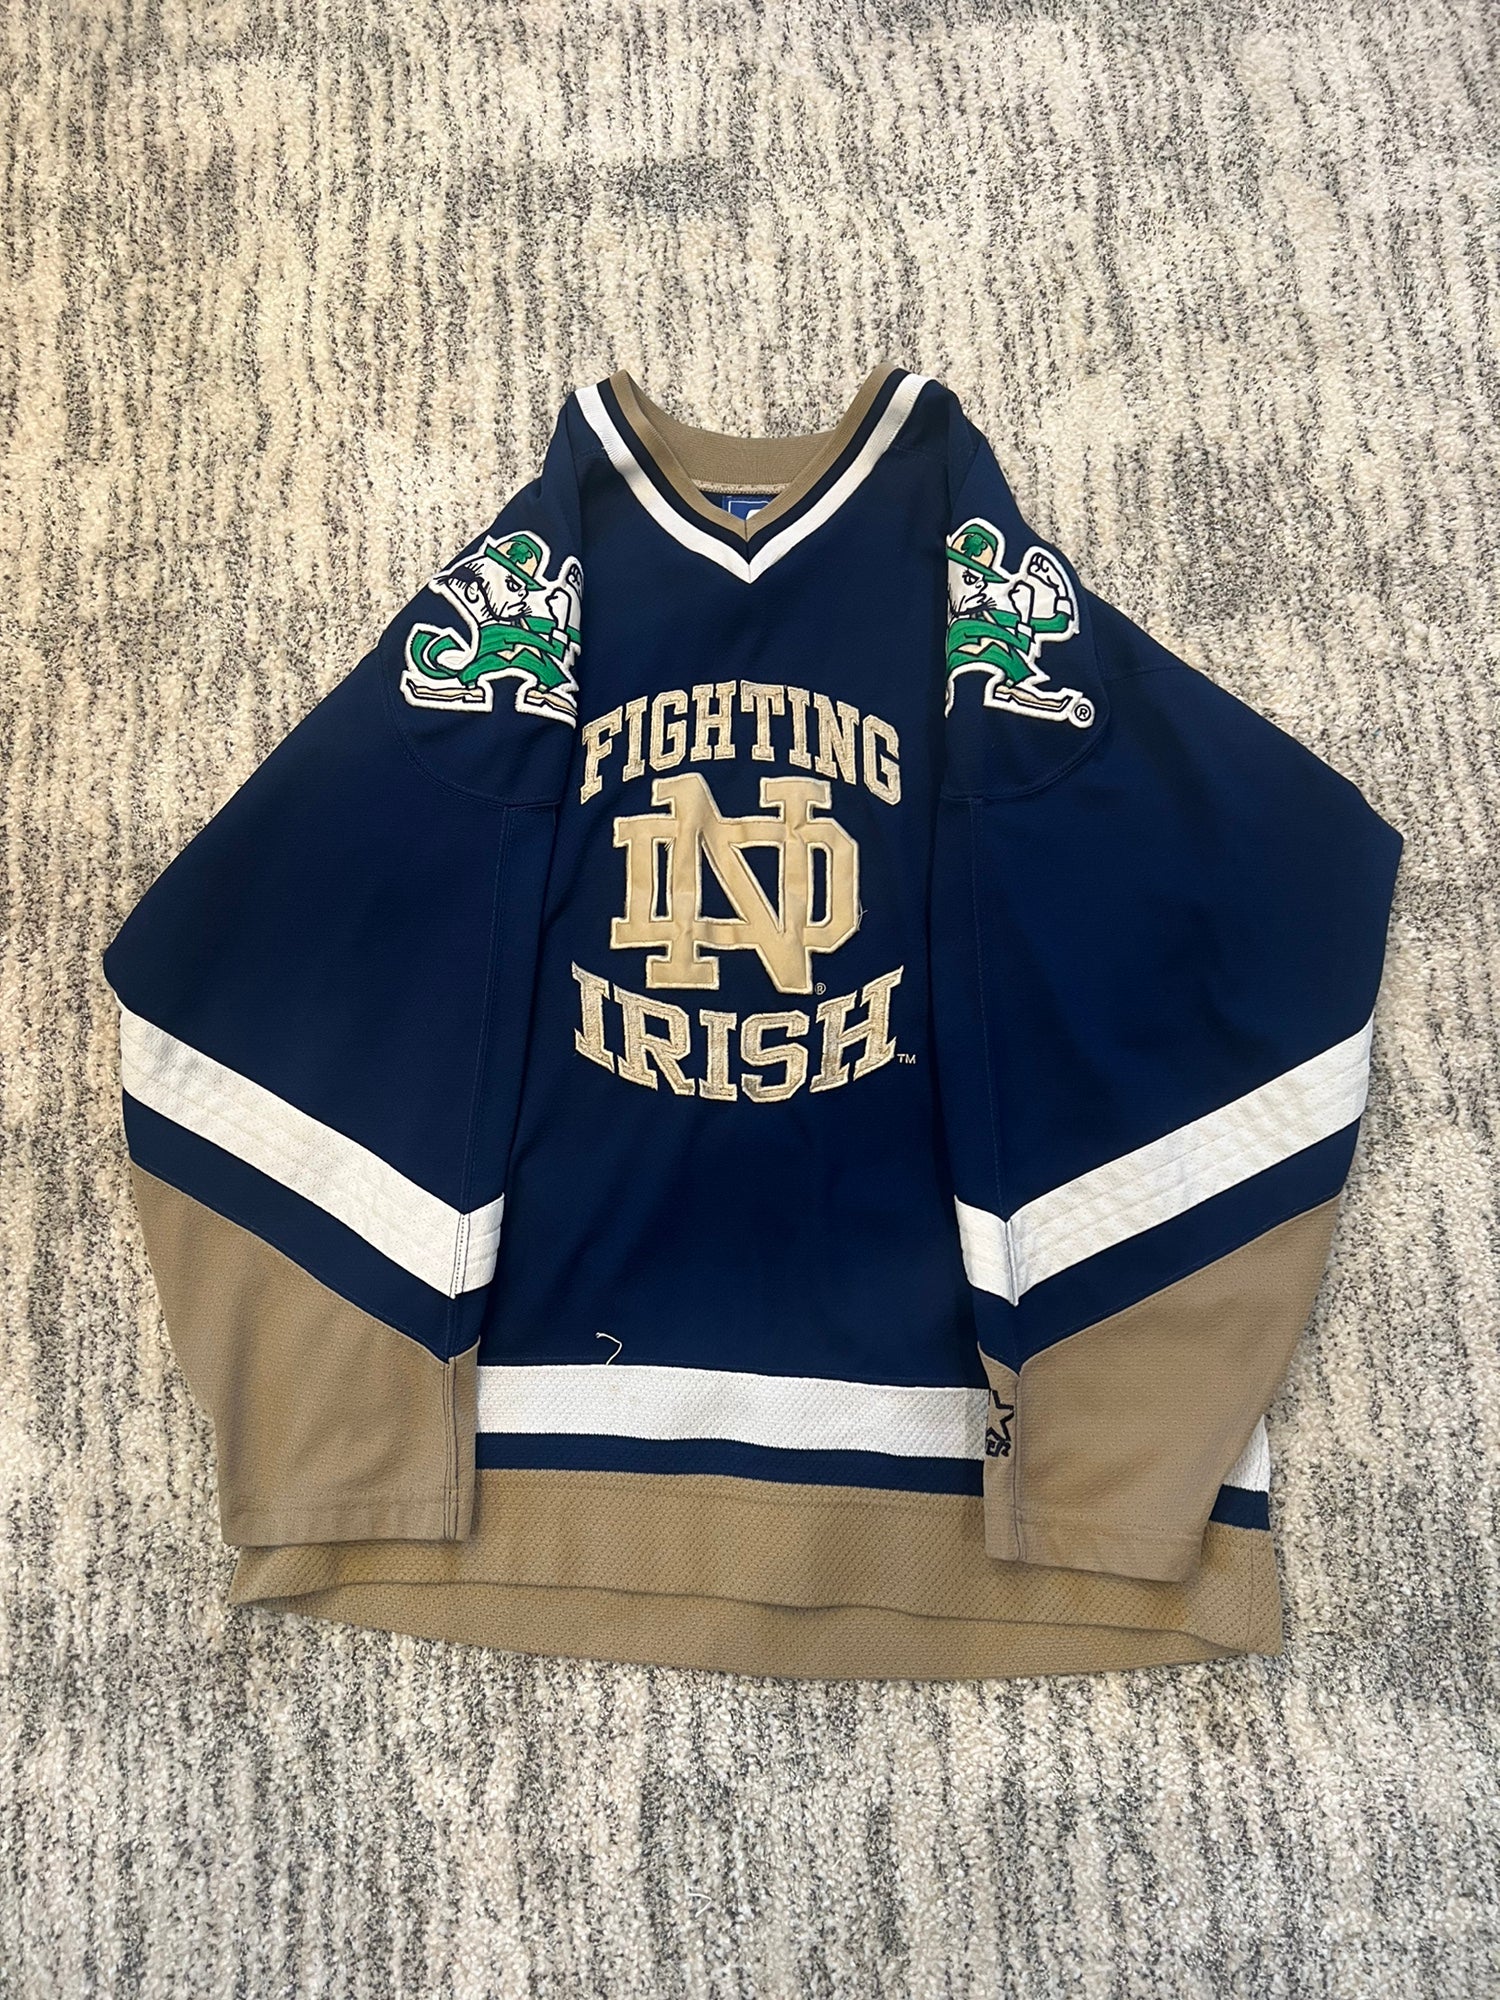 Vintage Notre Dame Fighting Irish Starter Hockey College Jersey